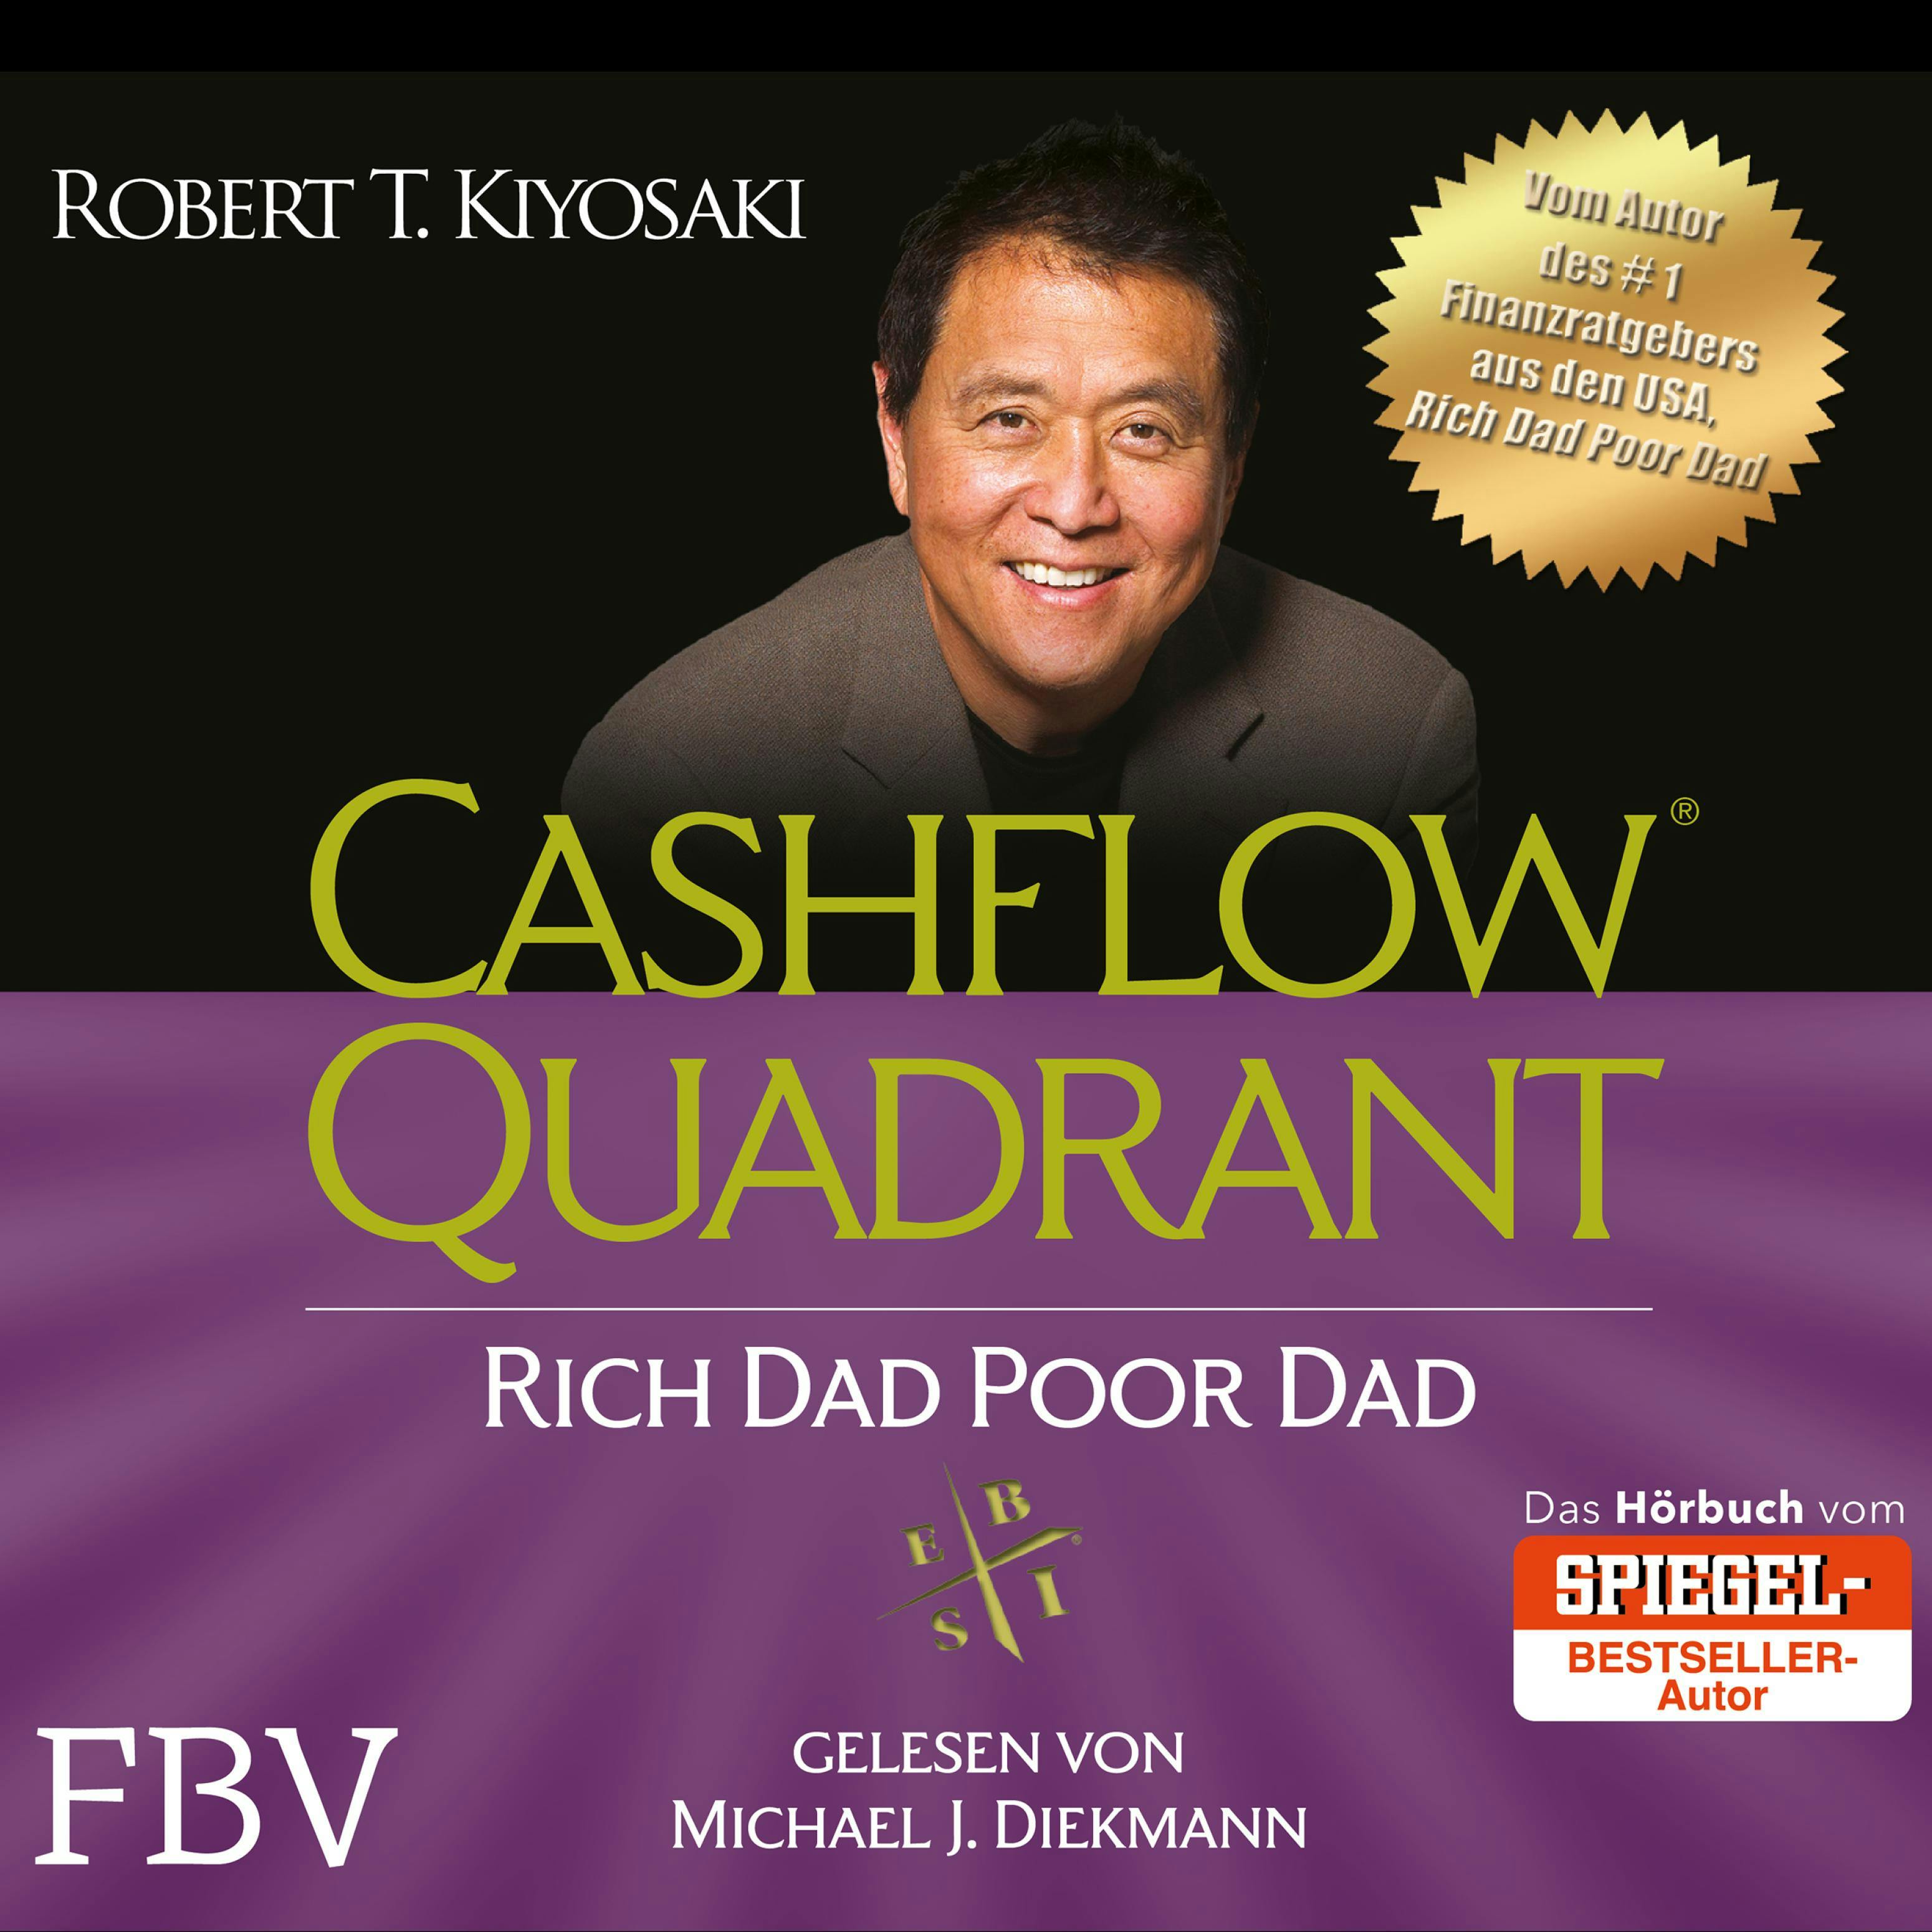 Cashflow Quadrant: Rich Dad Poor Dad: Deutsche Ausgabe - undefined